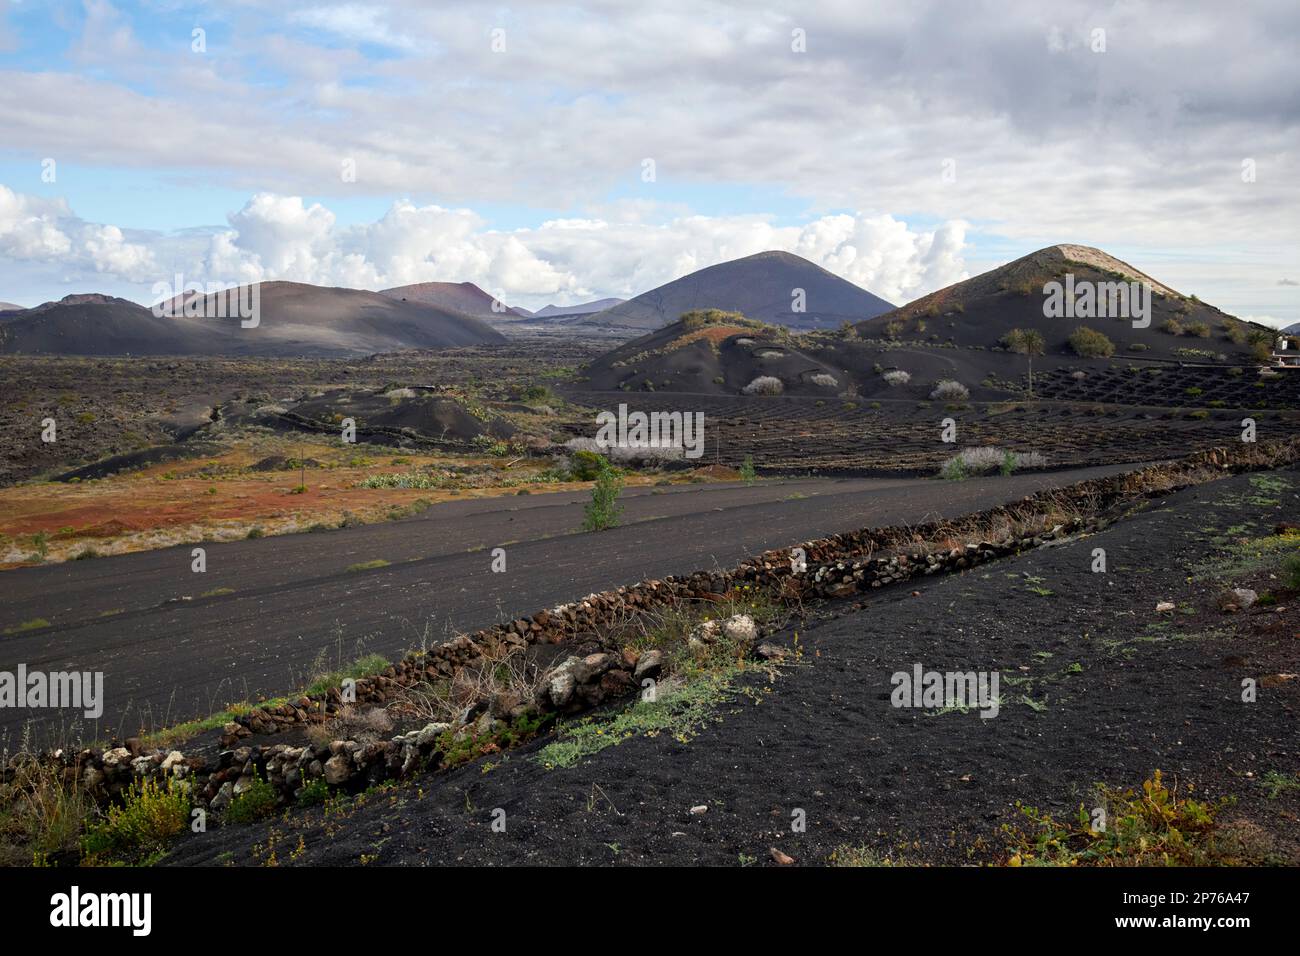 La geria regione vinicola paesaggio con vulcani sullo sfondo Lanzarote, Isole Canarie, Spagna Foto Stock